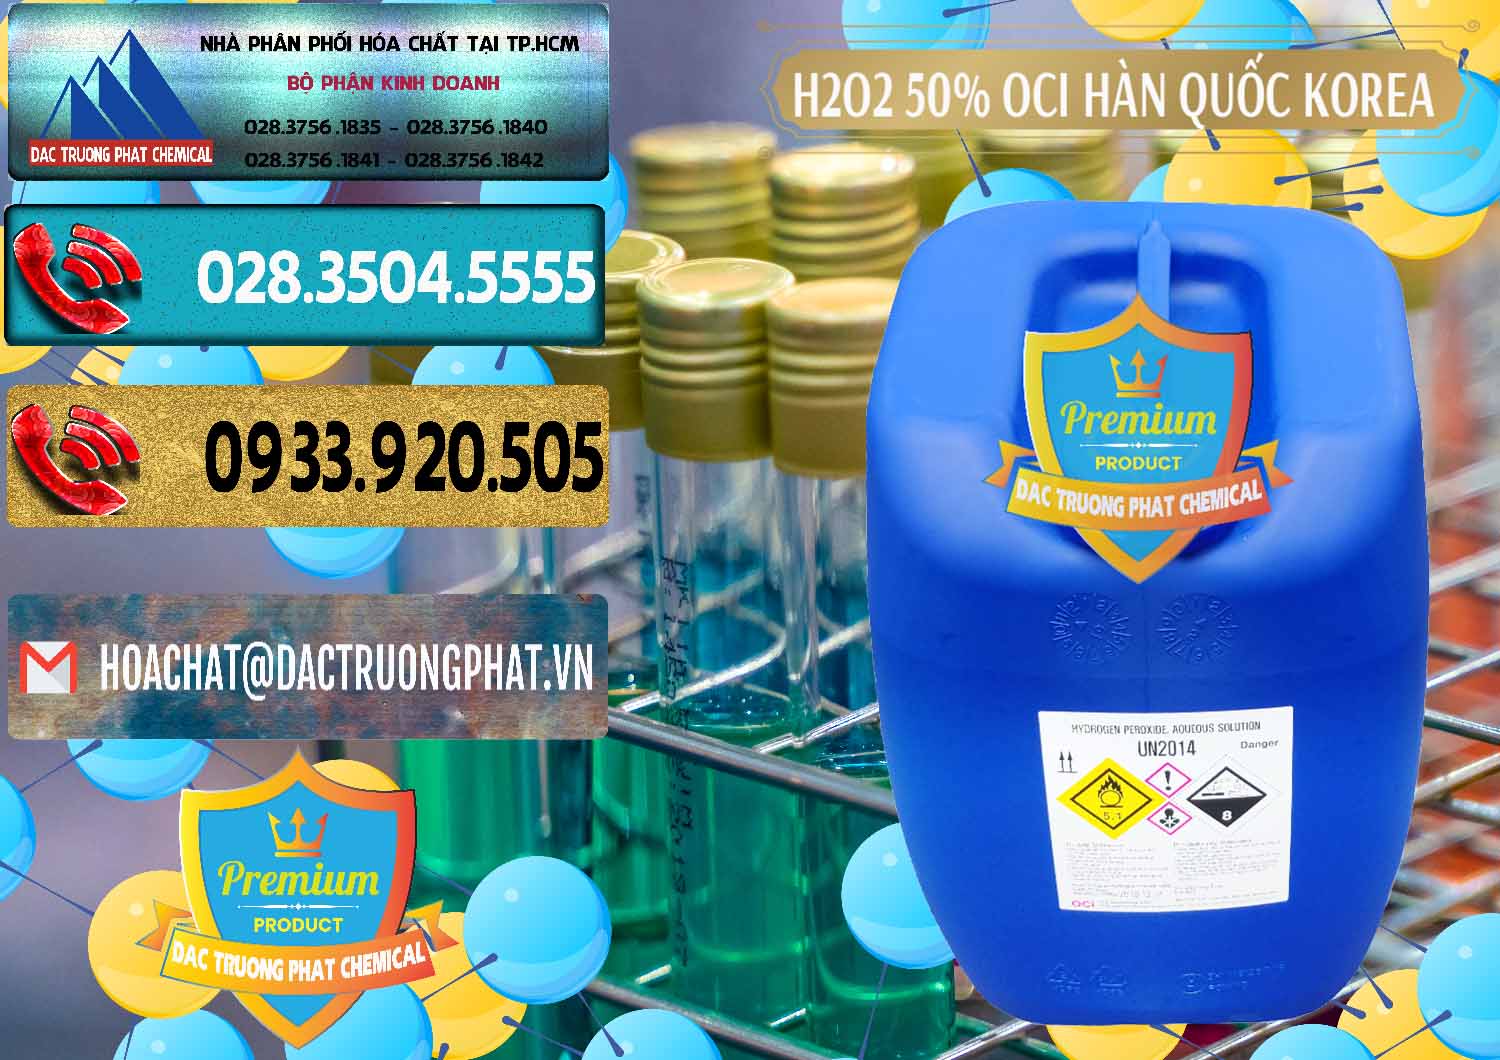 Cty kinh doanh ( bán ) H2O2 - Hydrogen Peroxide 50% OCI Hàn Quốc Korea - 0075 - Cty cung cấp _ phân phối hóa chất tại TP.HCM - hoachatdetnhuom.com